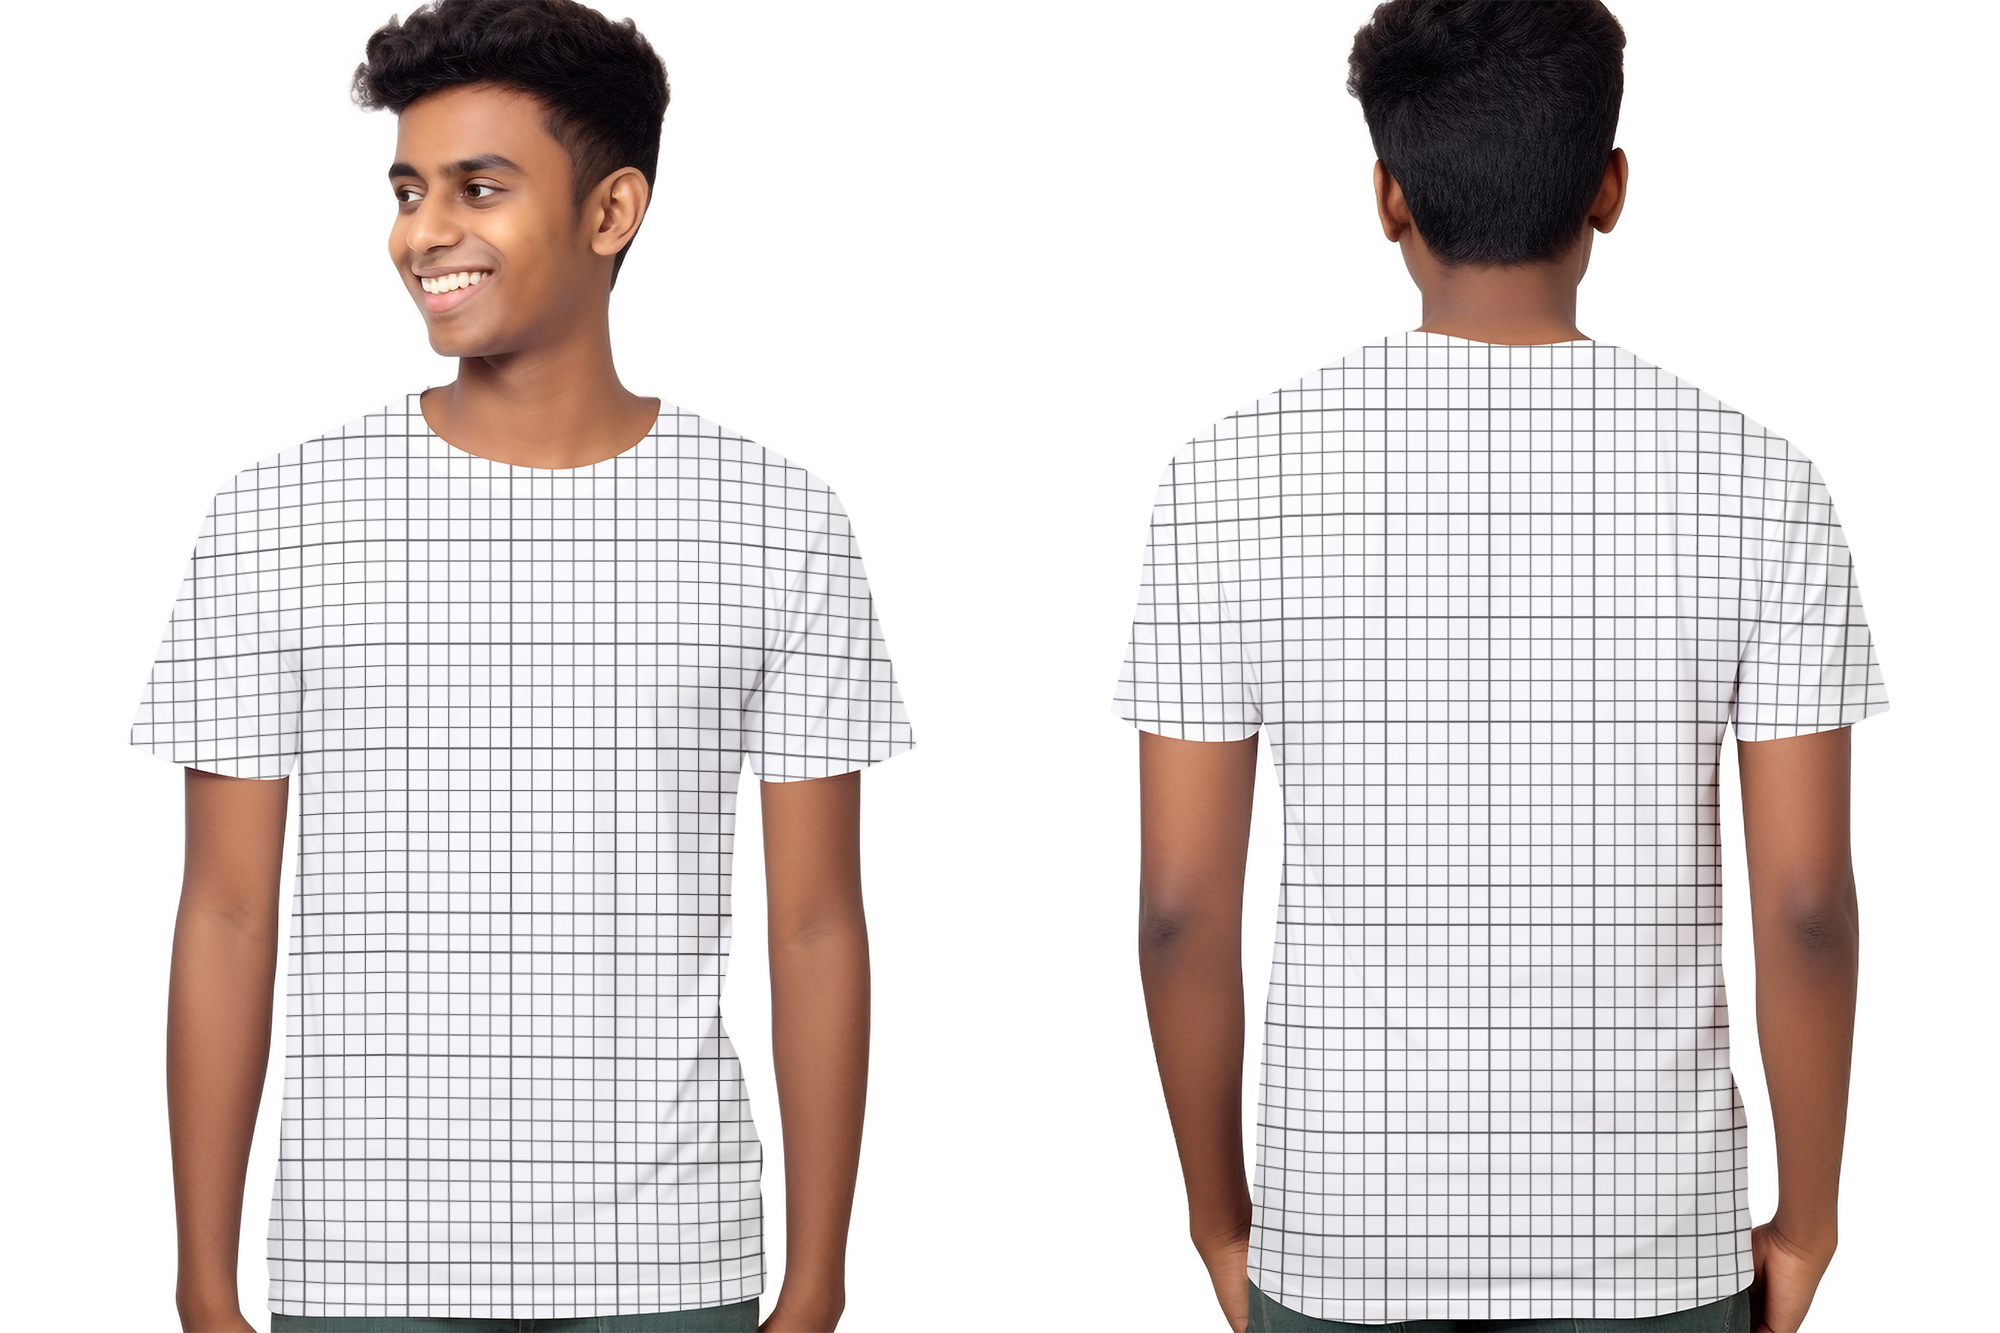  Free Download Young Bangladeshi man wearing T-shirt back and front mockup grid